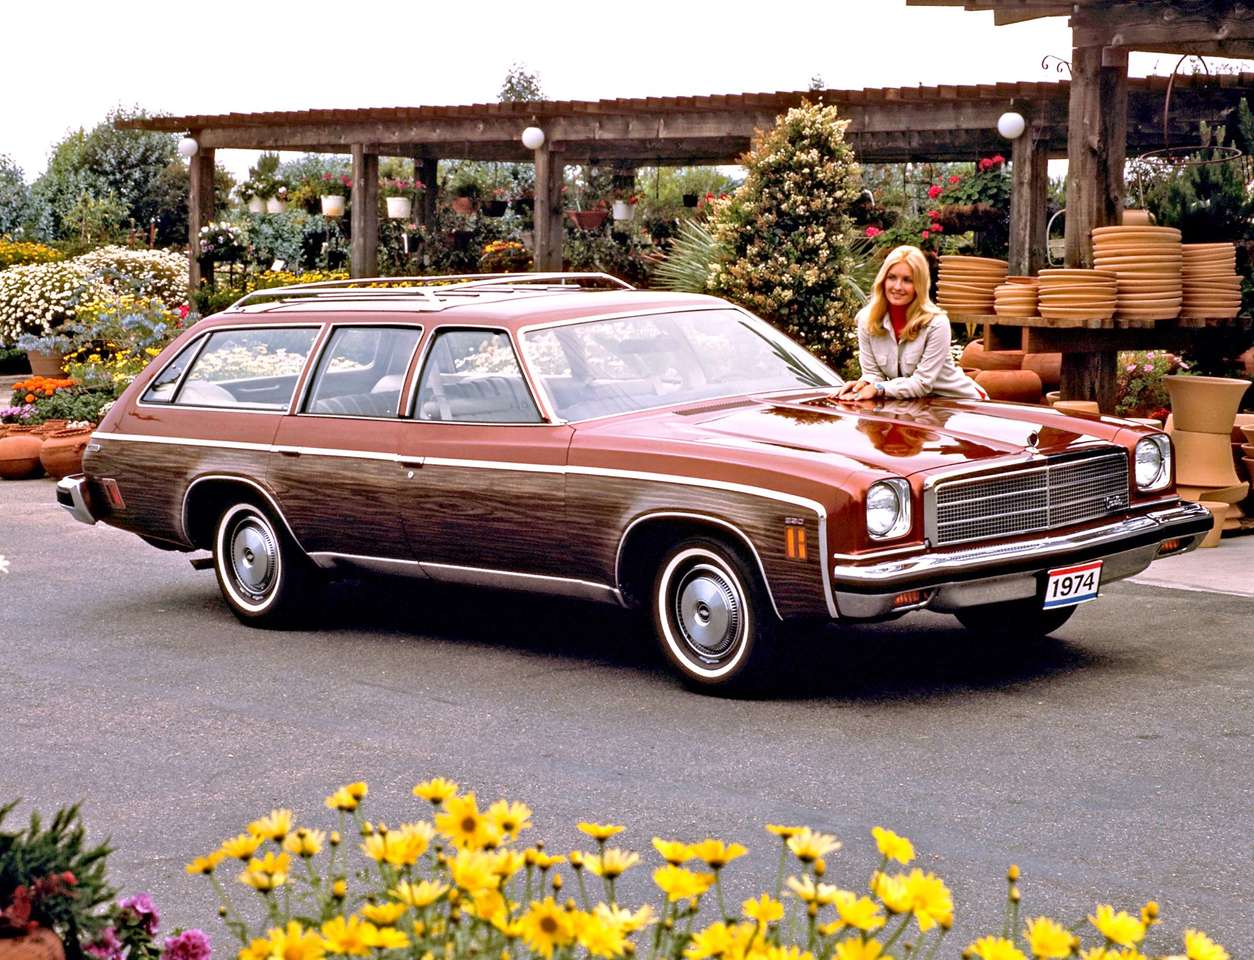 1974 Chevrolet Chevelle Malibu Classic Estate Wagon puzzle online